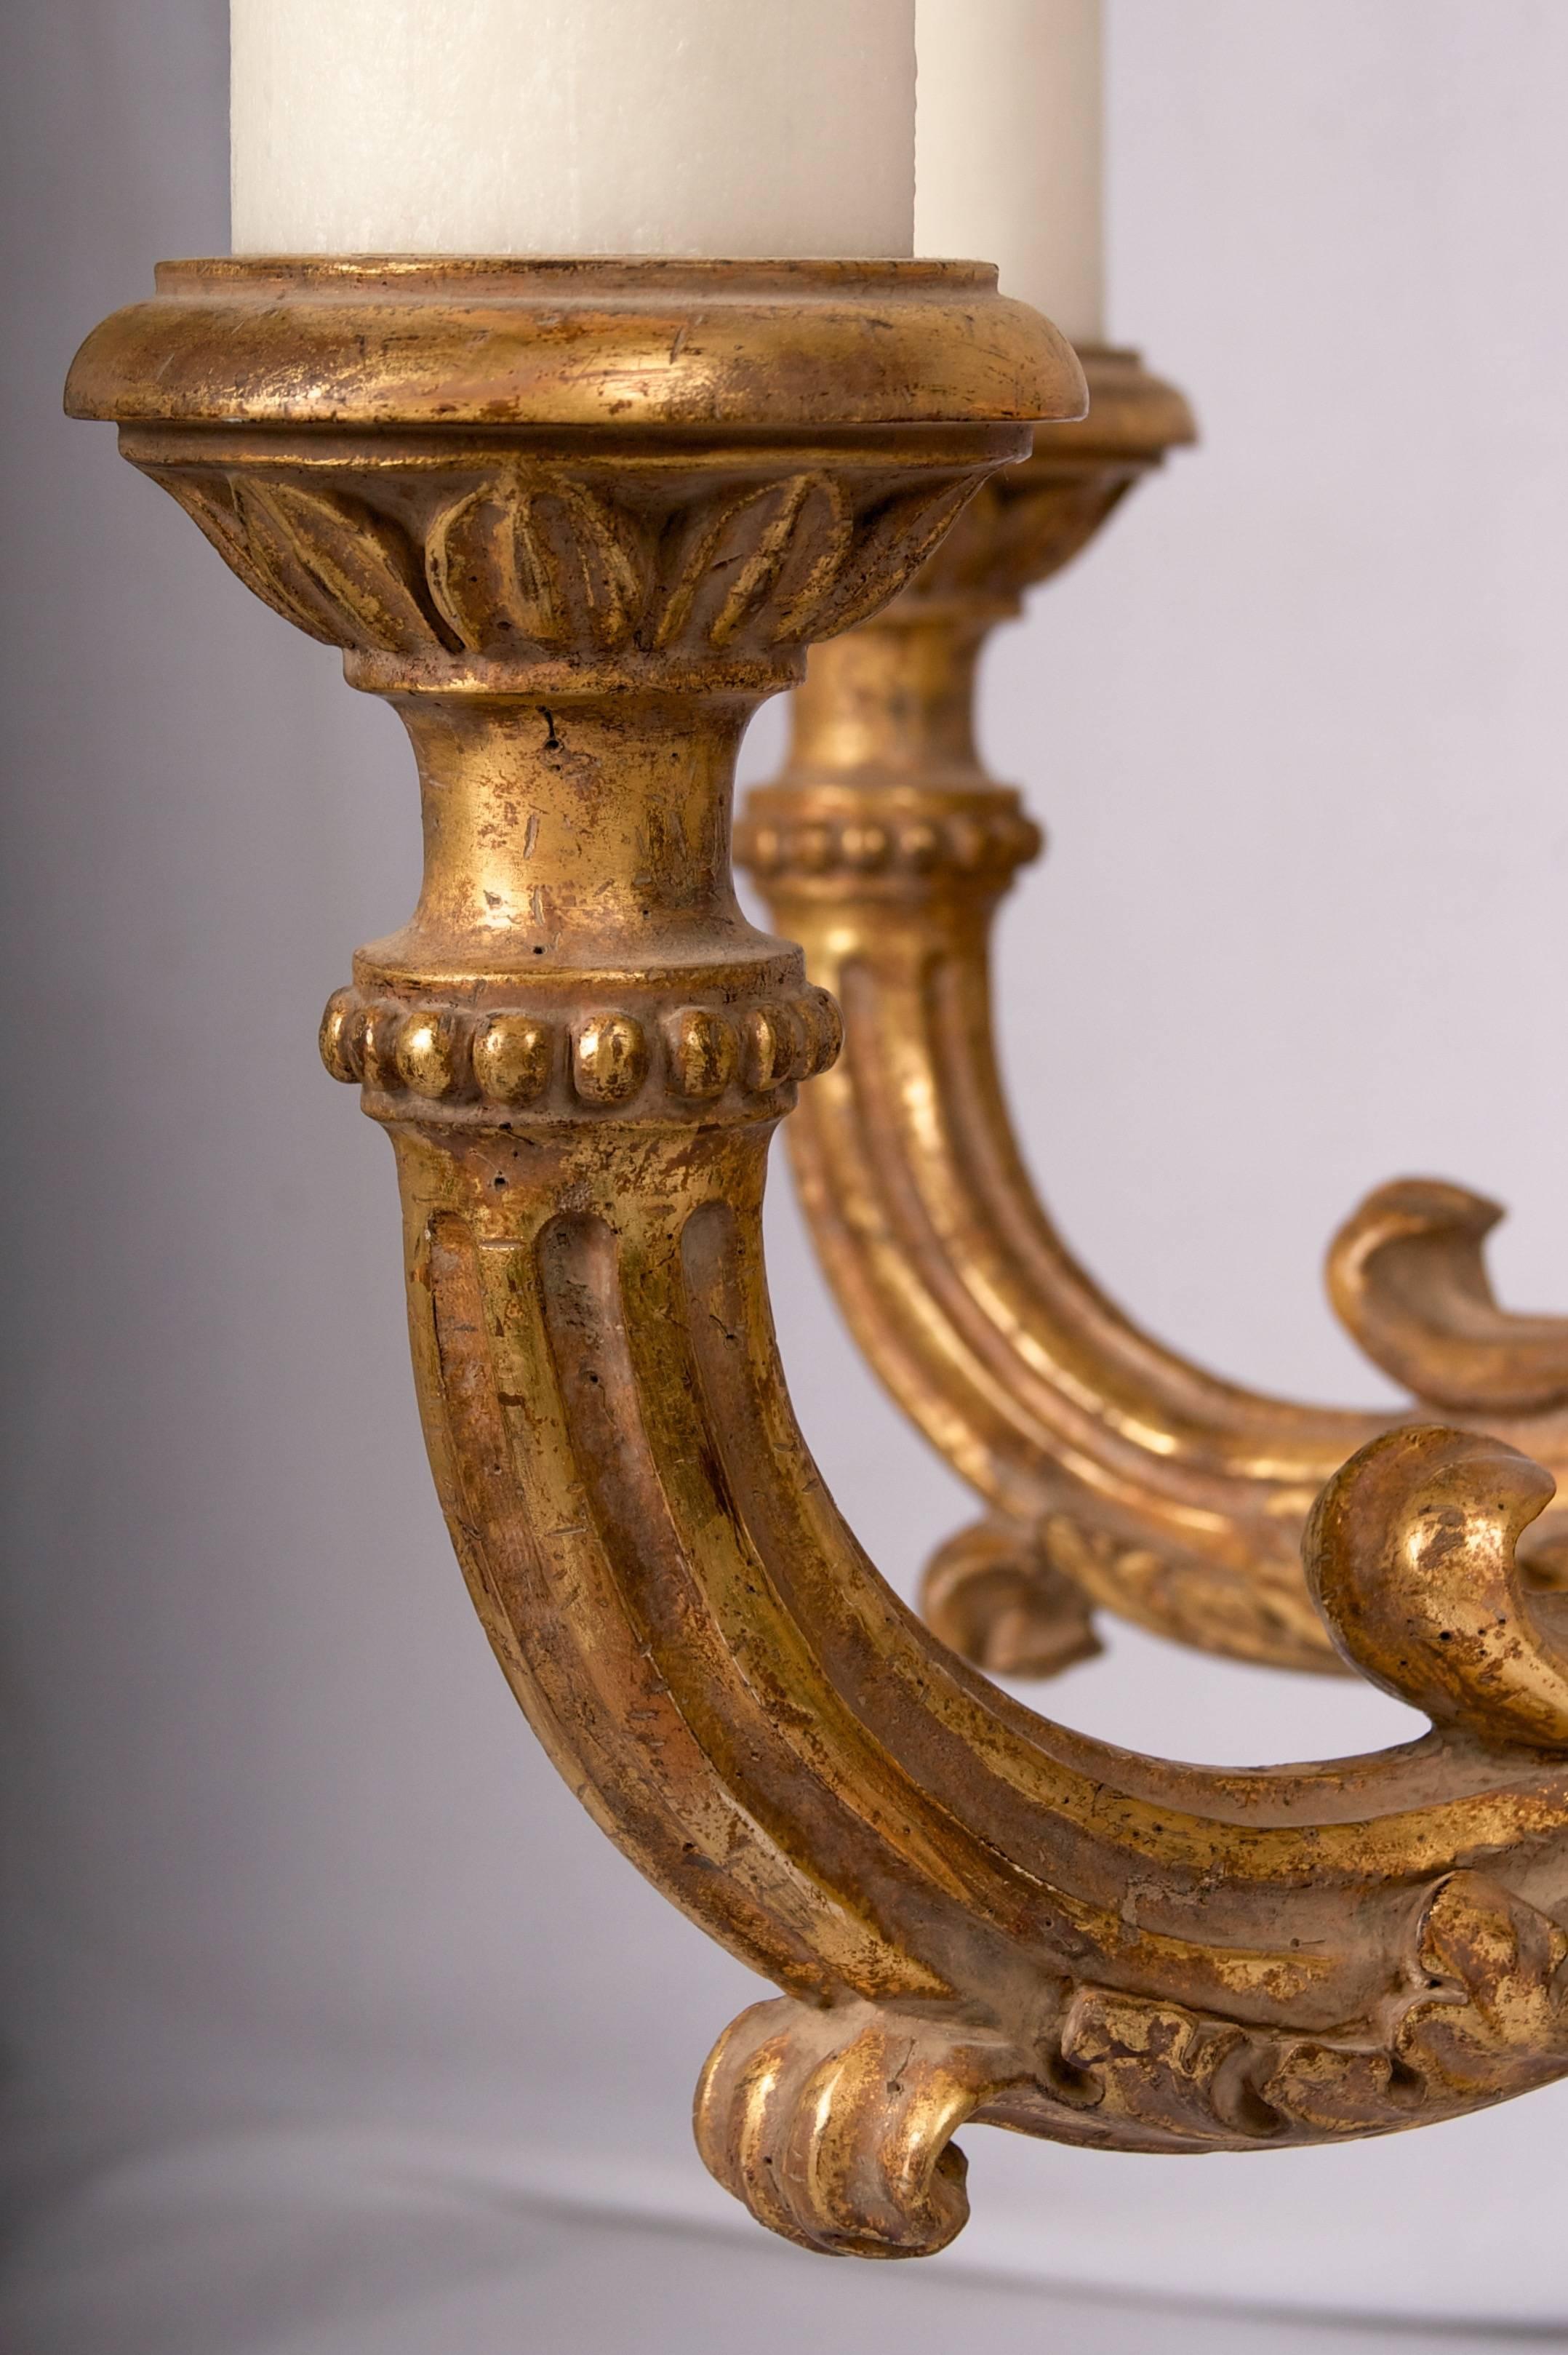 Ein sehr umfangreicher handgeschnitzter und vergoldeter Kronleuchter mit wunderschönem Wachs
kerze Ärmel und große ausgewogene Form.